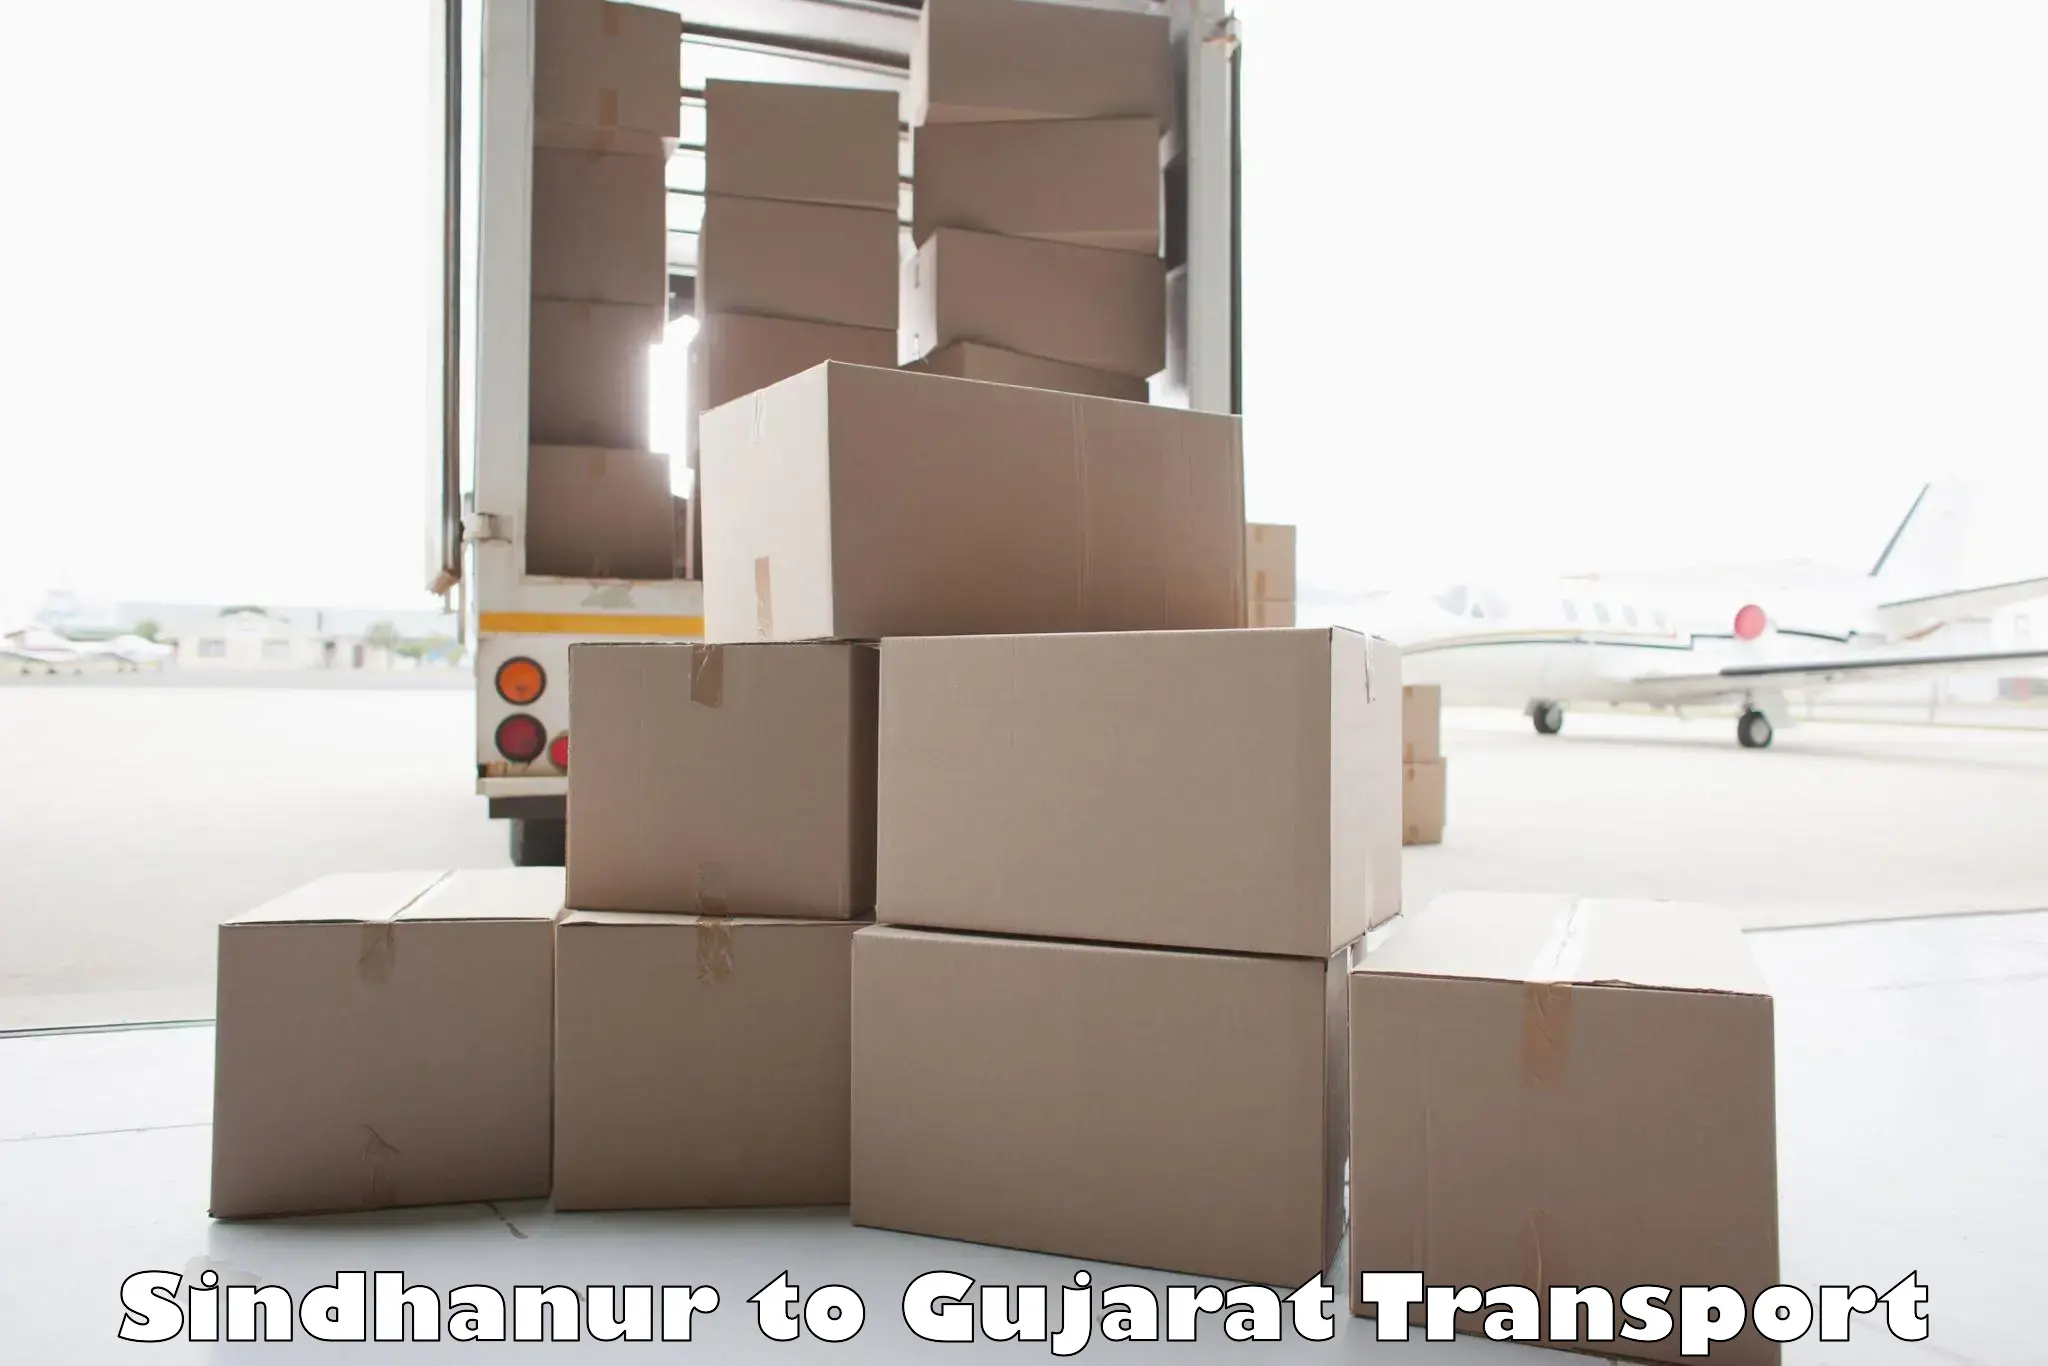 Furniture transport service Sindhanur to Bhesan